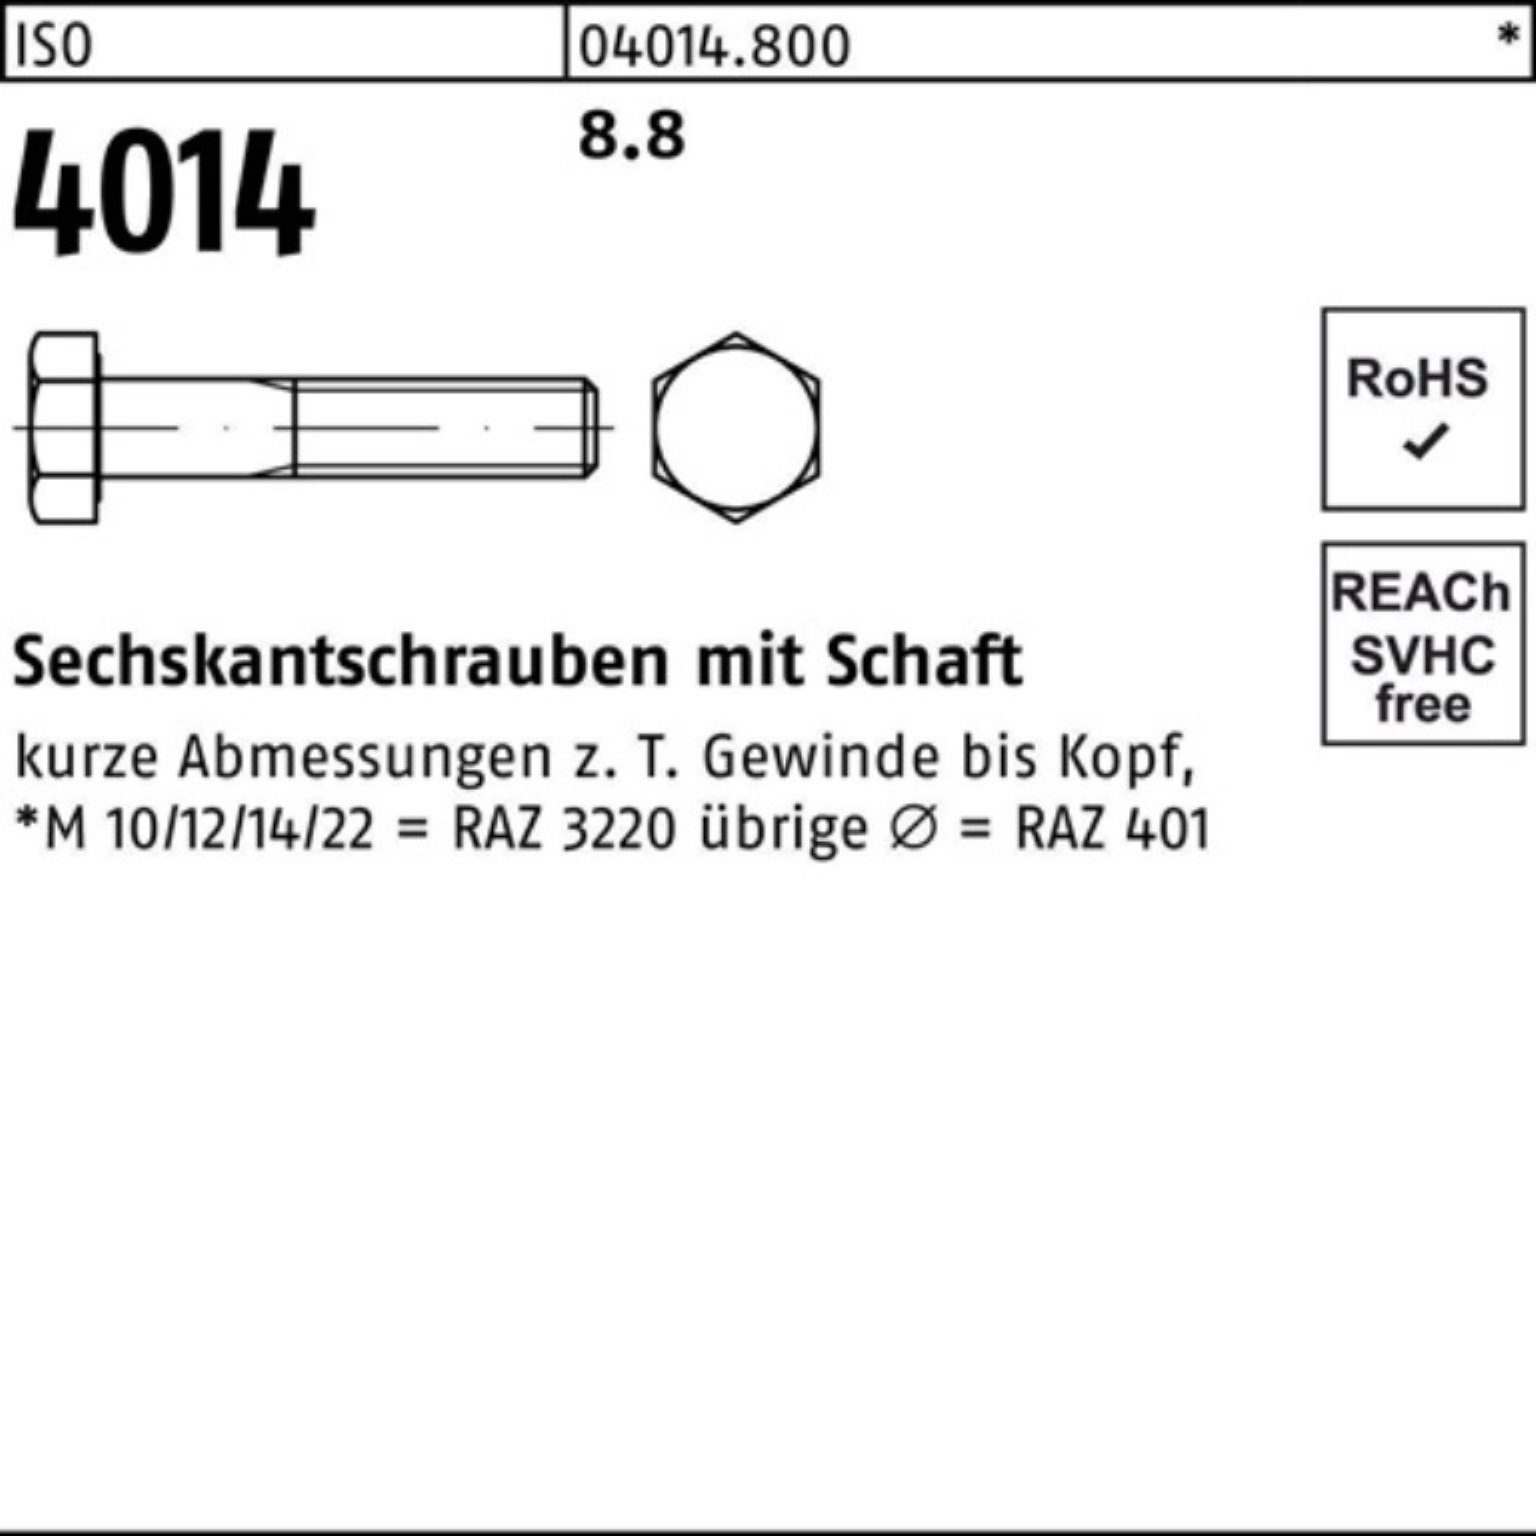 290 Sechskantschraube 4014 100er 1 Stück 8.8 Schaft ISO M30x Pack Bufab Sechskantschraube ISO